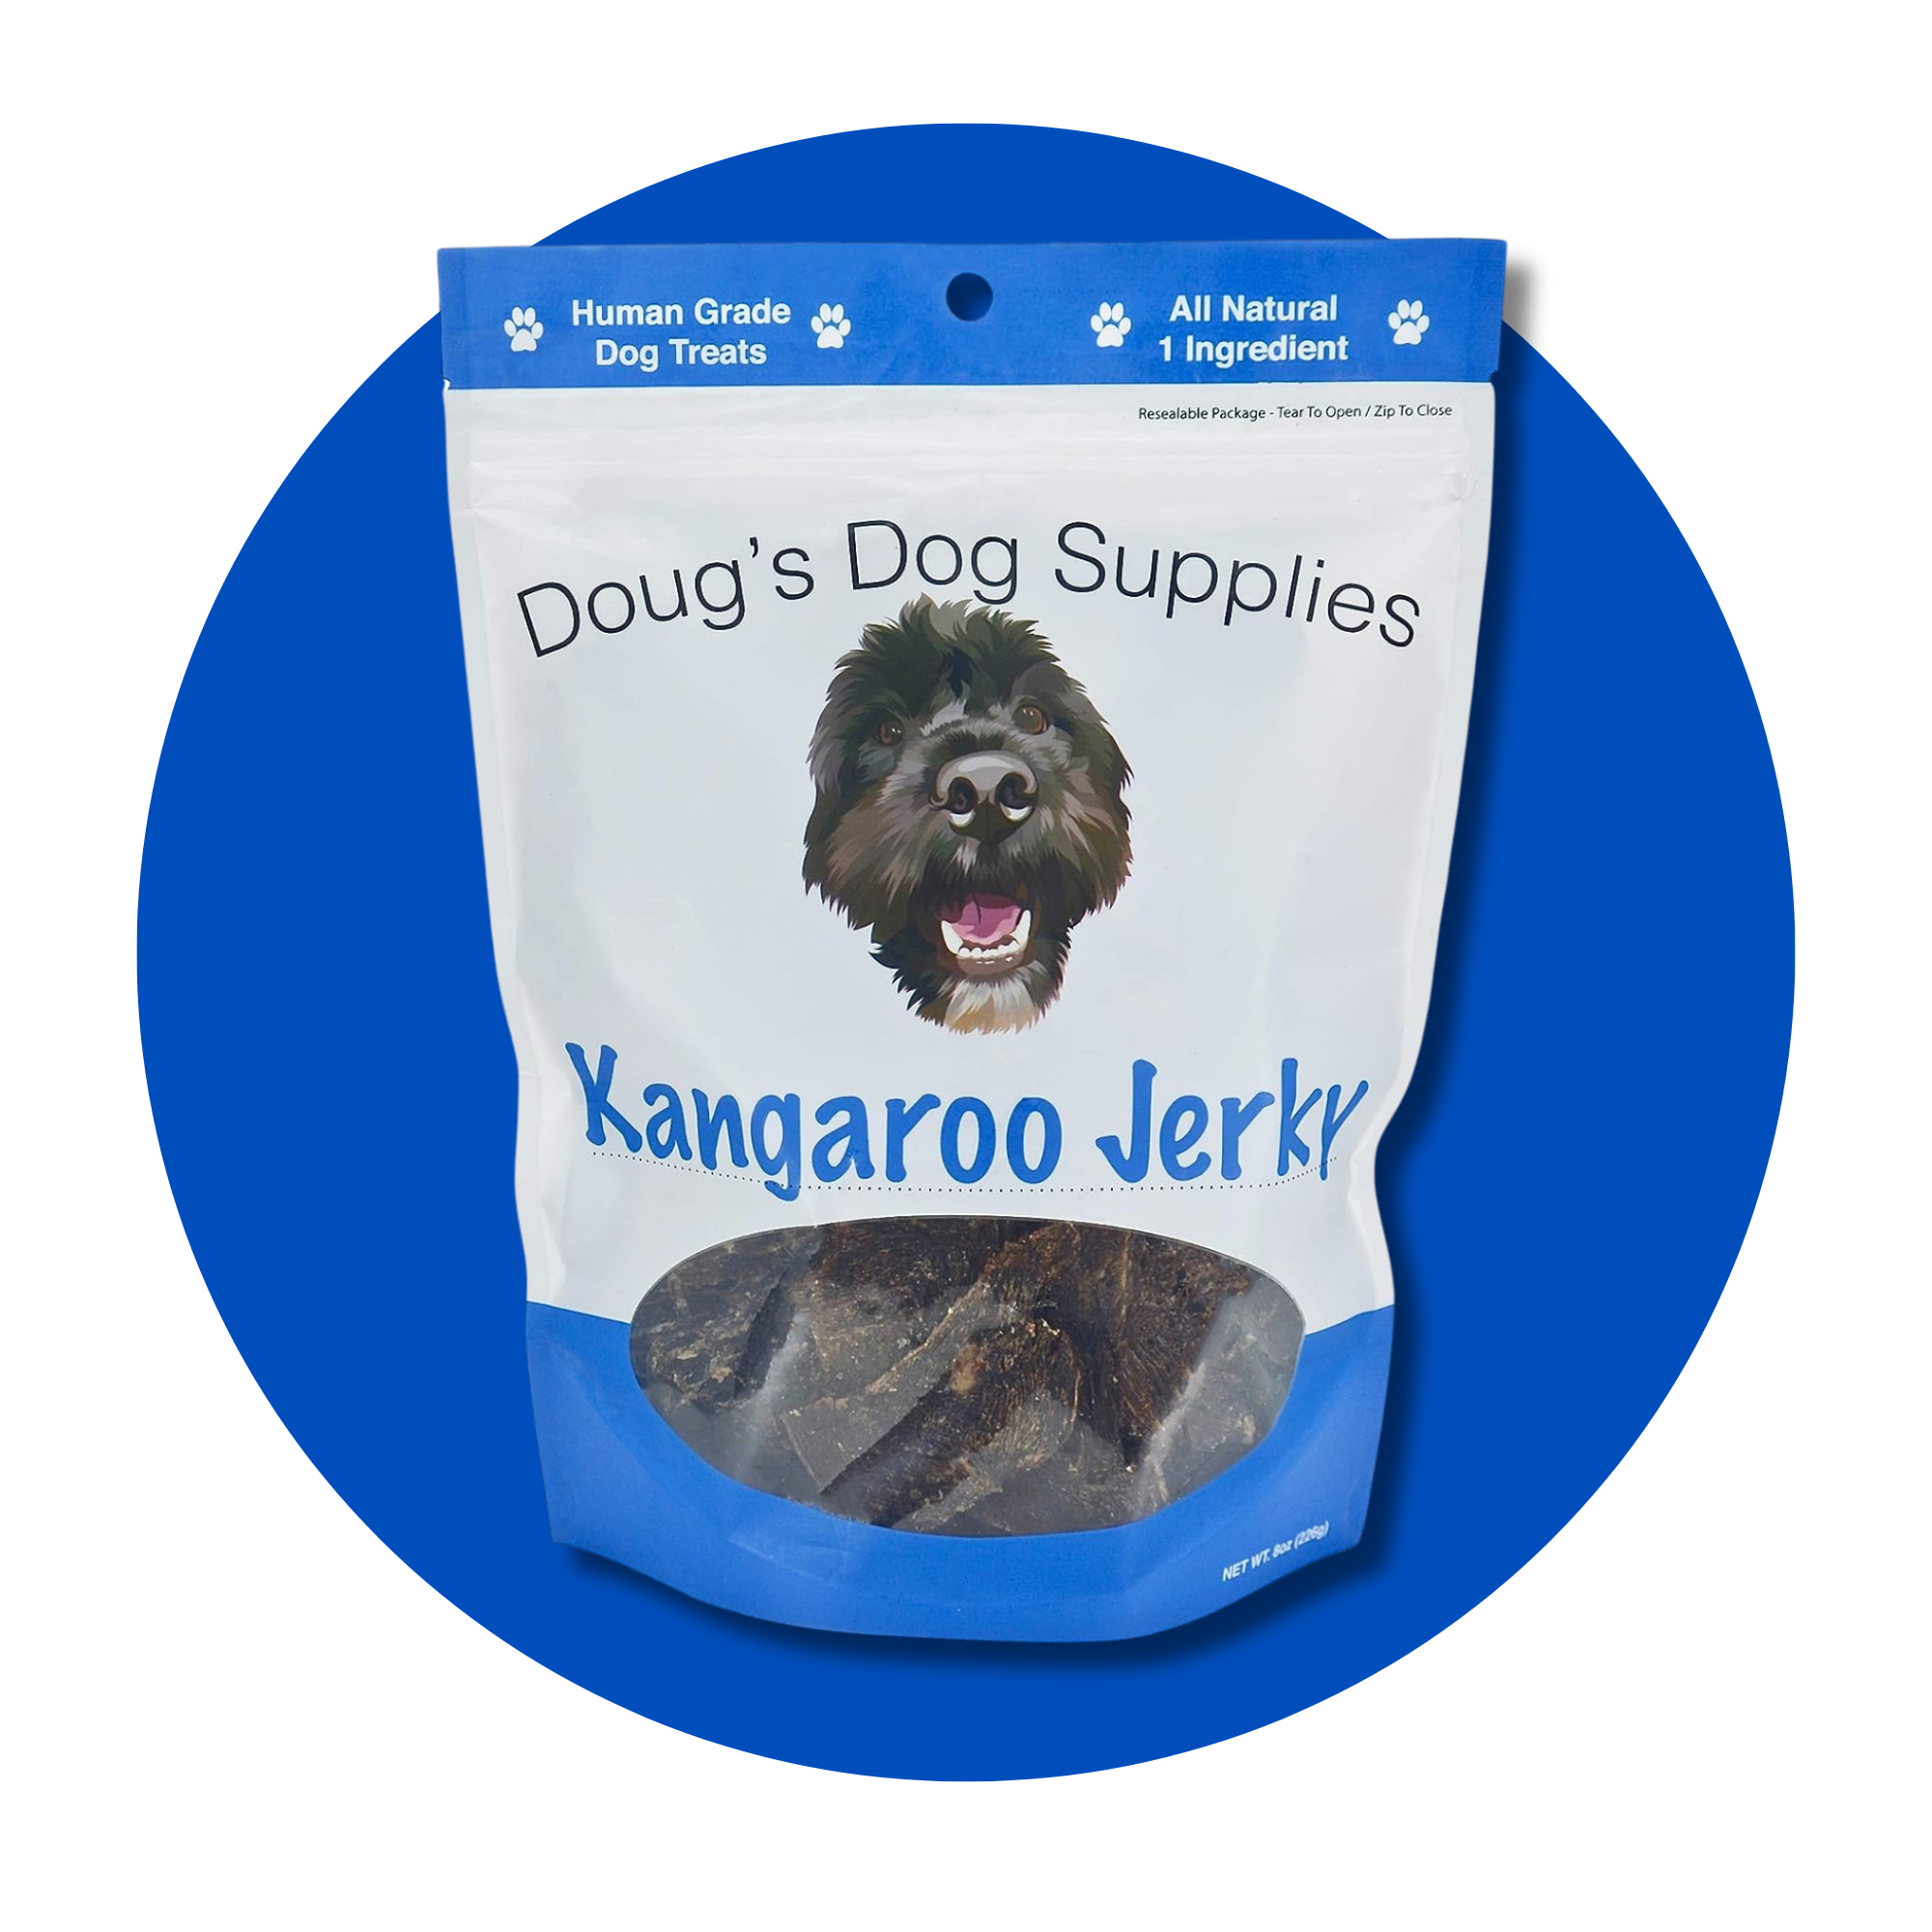 Kangaroo Jerky Dog Treats Doug's Dog Supplies